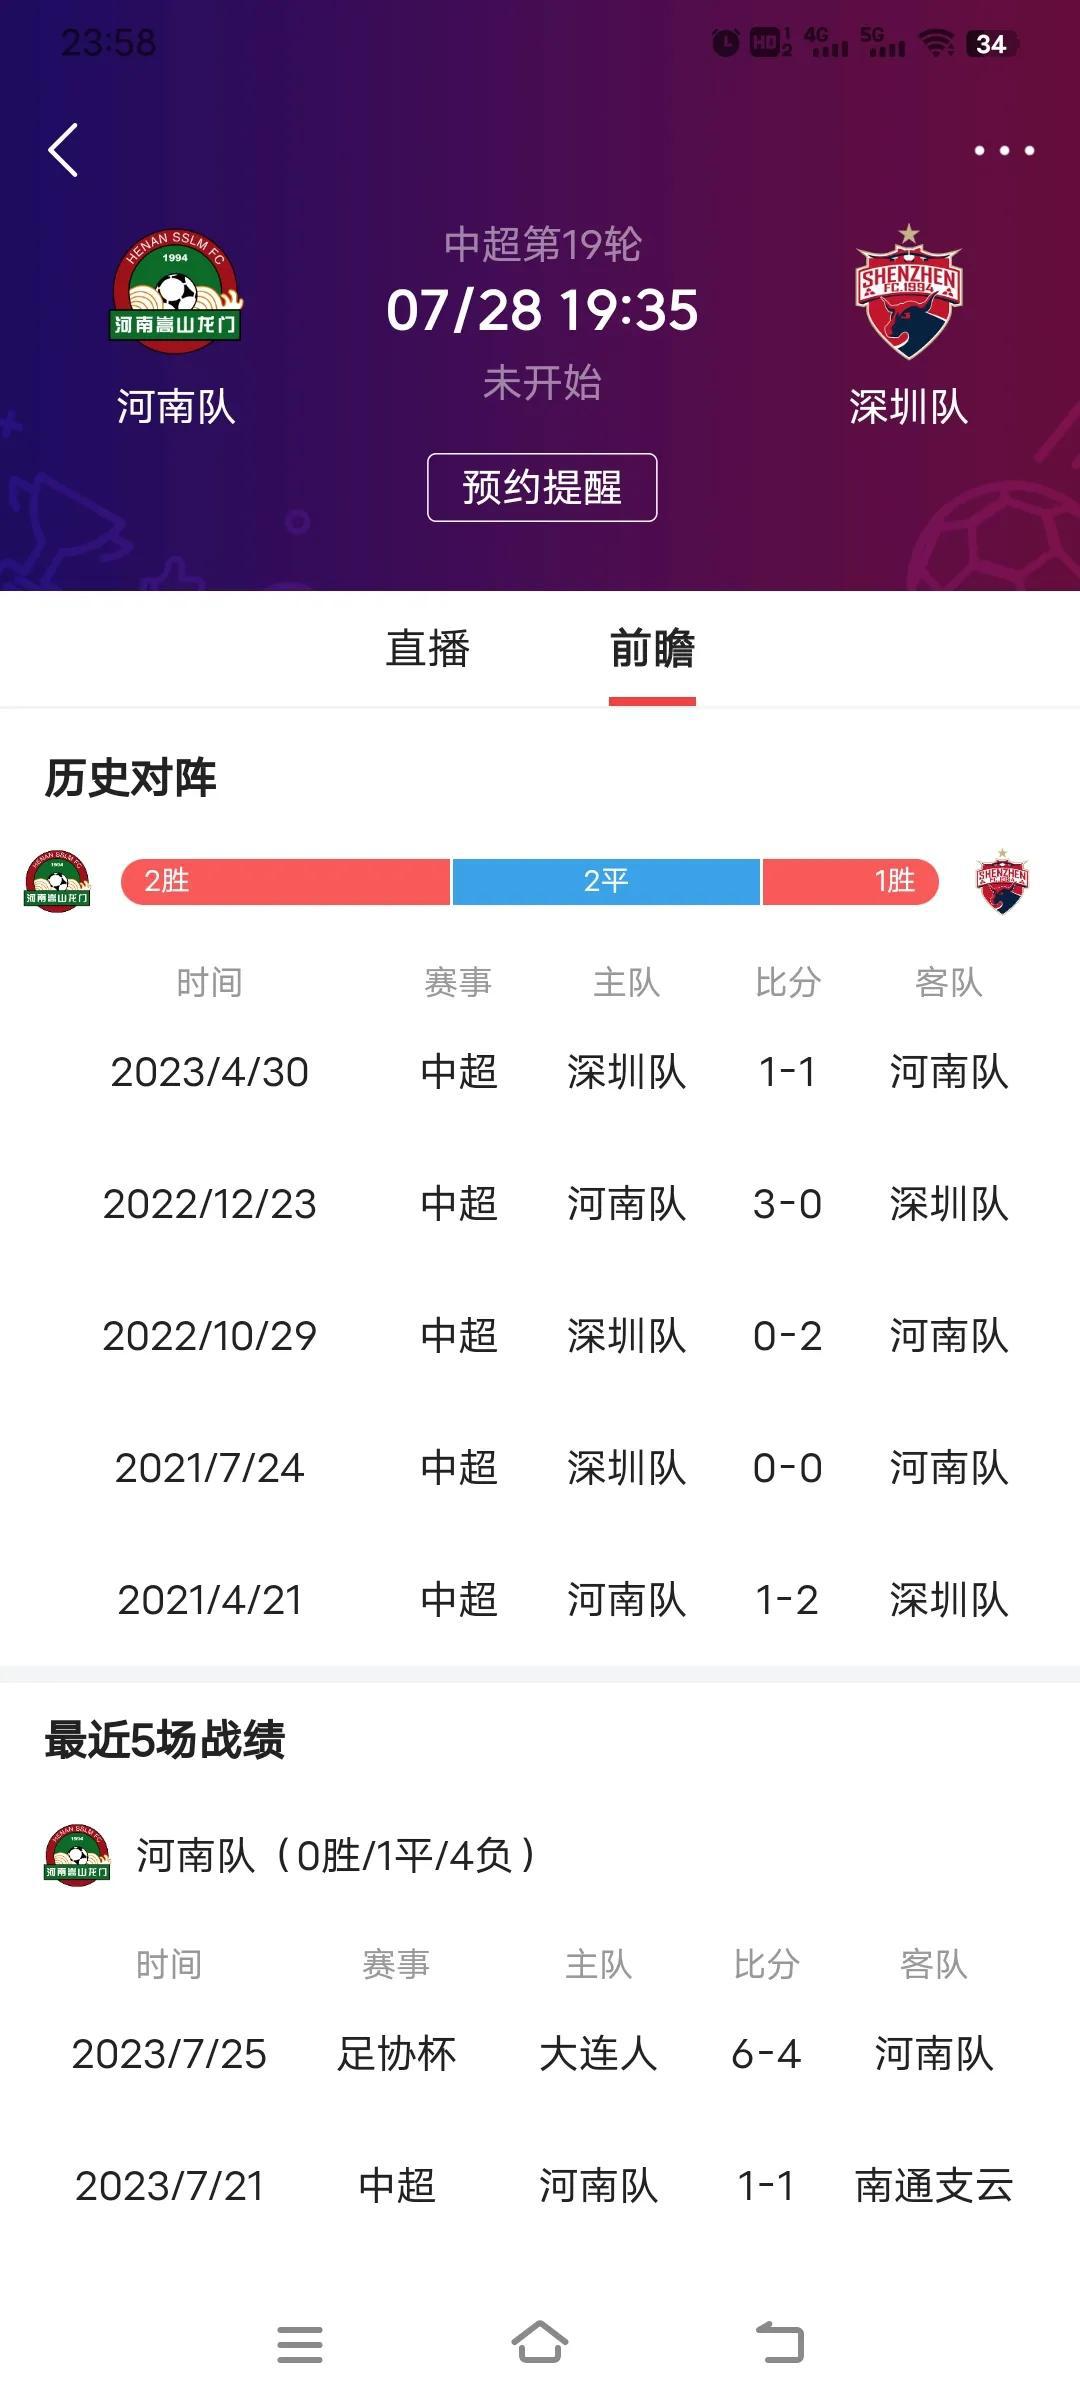 本周五中超19轮保级大战打响！
河南队主场对阵深圳队，上次交手打成了1比1，这次(1)